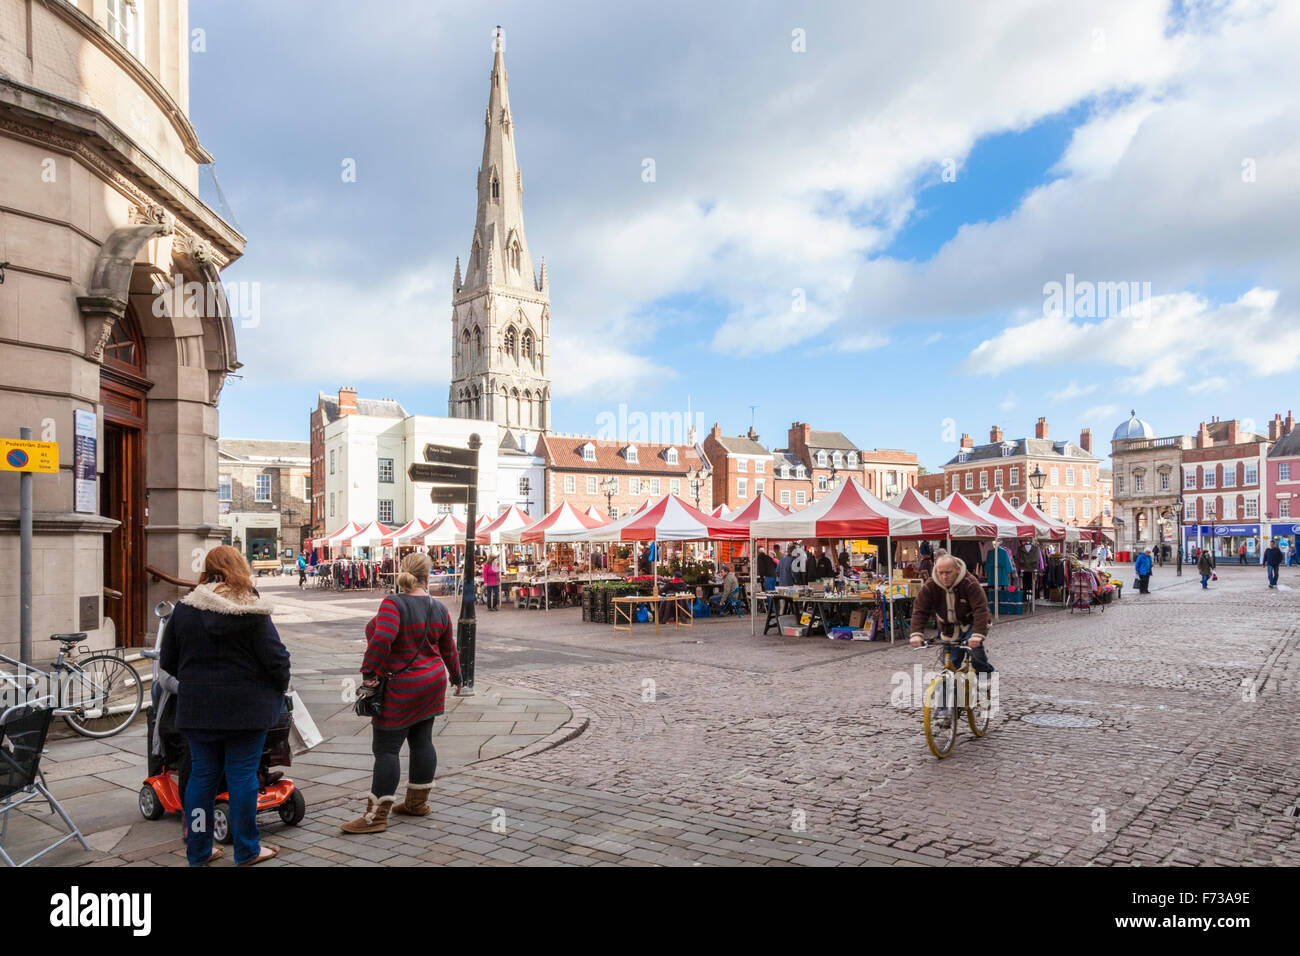 Market Place, nella città mercato di Newark on Trent, Nottinghamshire, Inghilterra, Regno Unito con St Mary Magdalene Church in background. Foto Stock